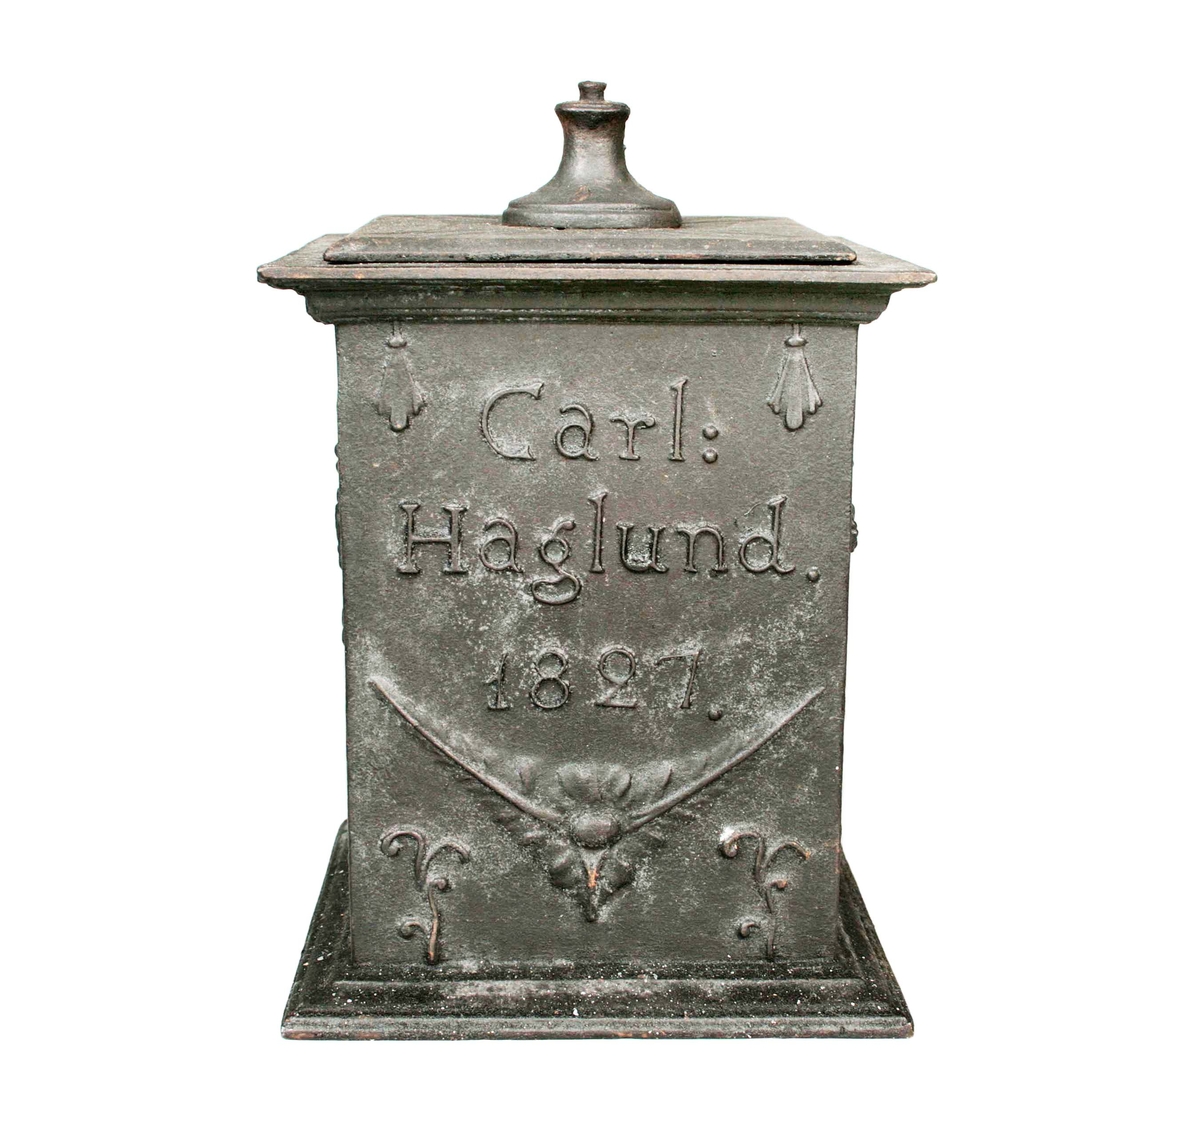 Fyrsidig med lock (defekt, lockurnan saknas). Sidorna med reliefdekor av "offeraltare, segergudinna, samt namnet Carl Haglund 1827". Under locket märkt: "HF" (Hällefors bruk).